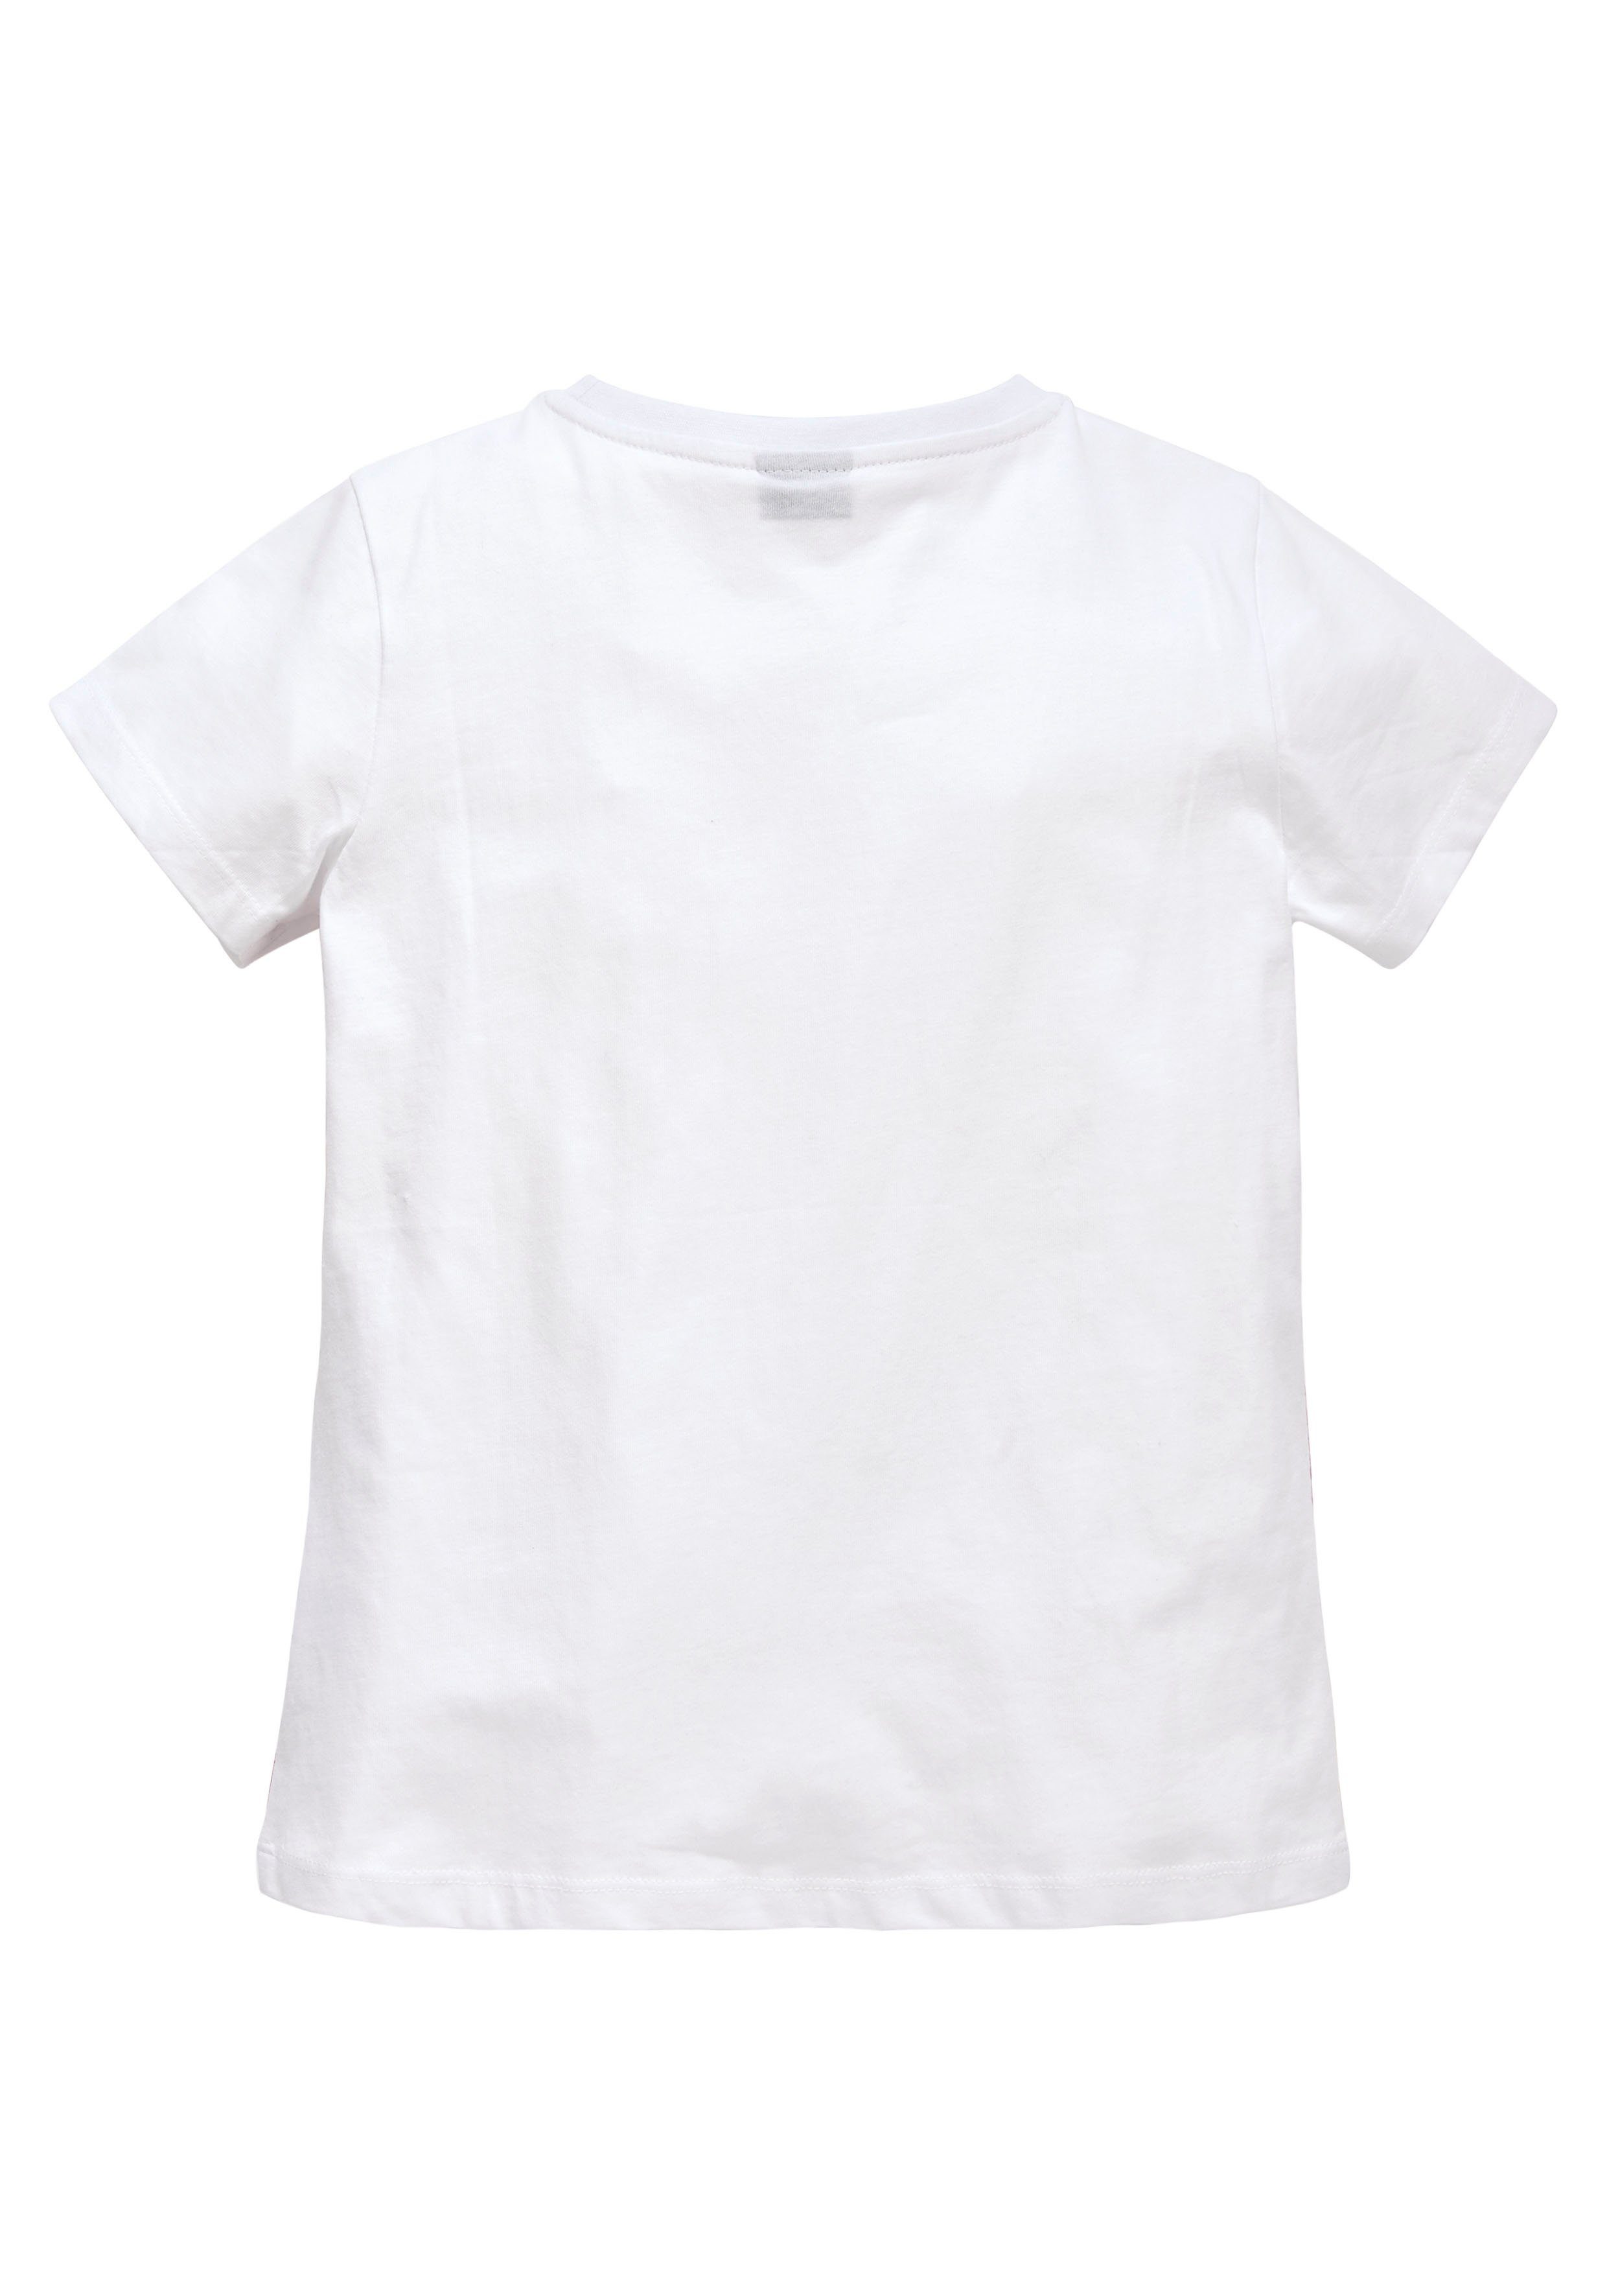 KIDSWORLD leicht in T-Shirt Form taillierter